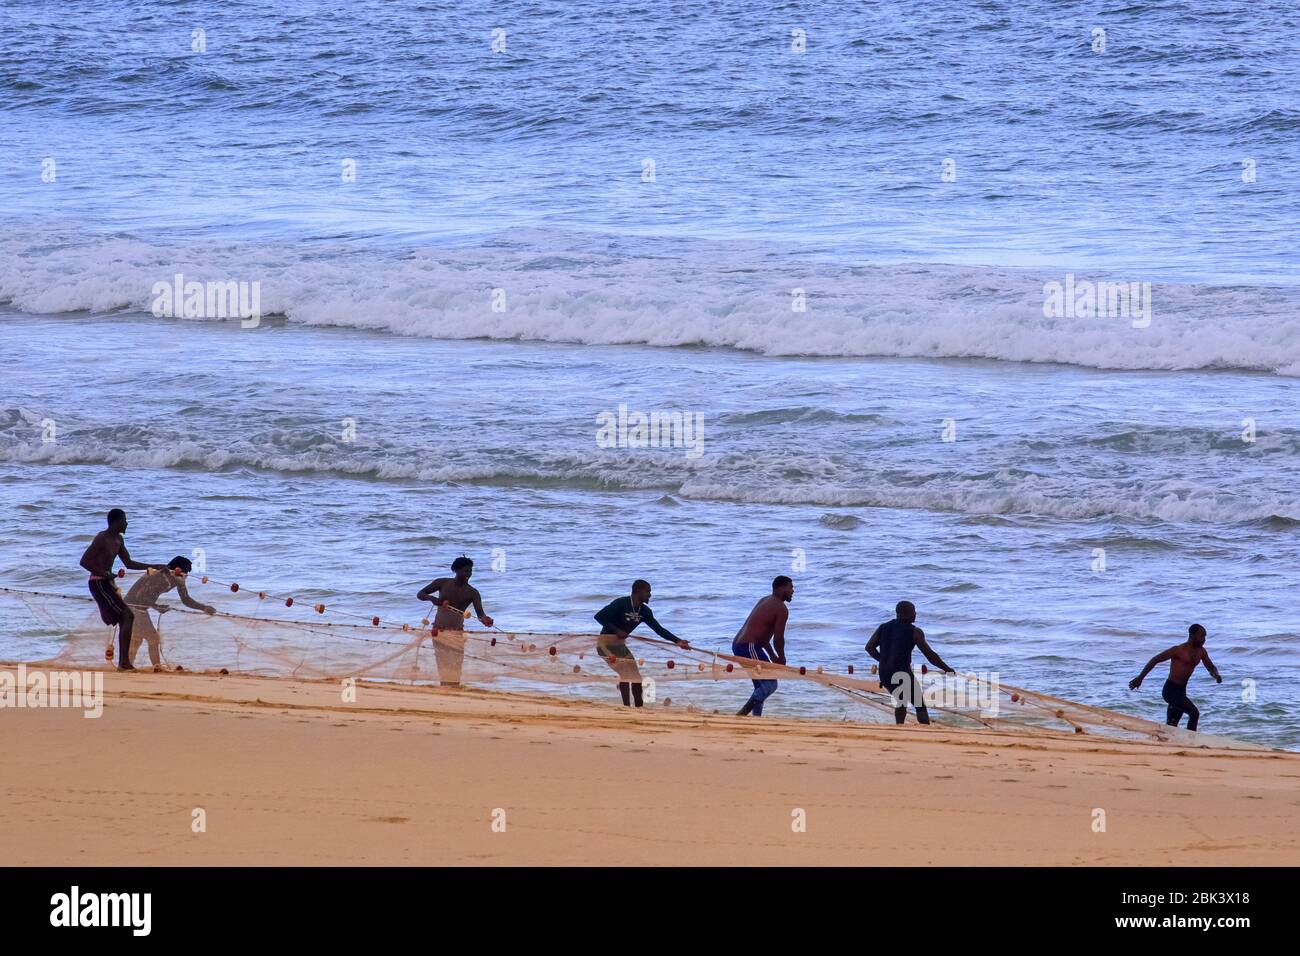 Fischer schleppen illegales Fangnetz am Strand von Rabil auf der Insel Boa Vista, Kap Verde / Cabo Verde Archipel im Atlantik Stockfoto